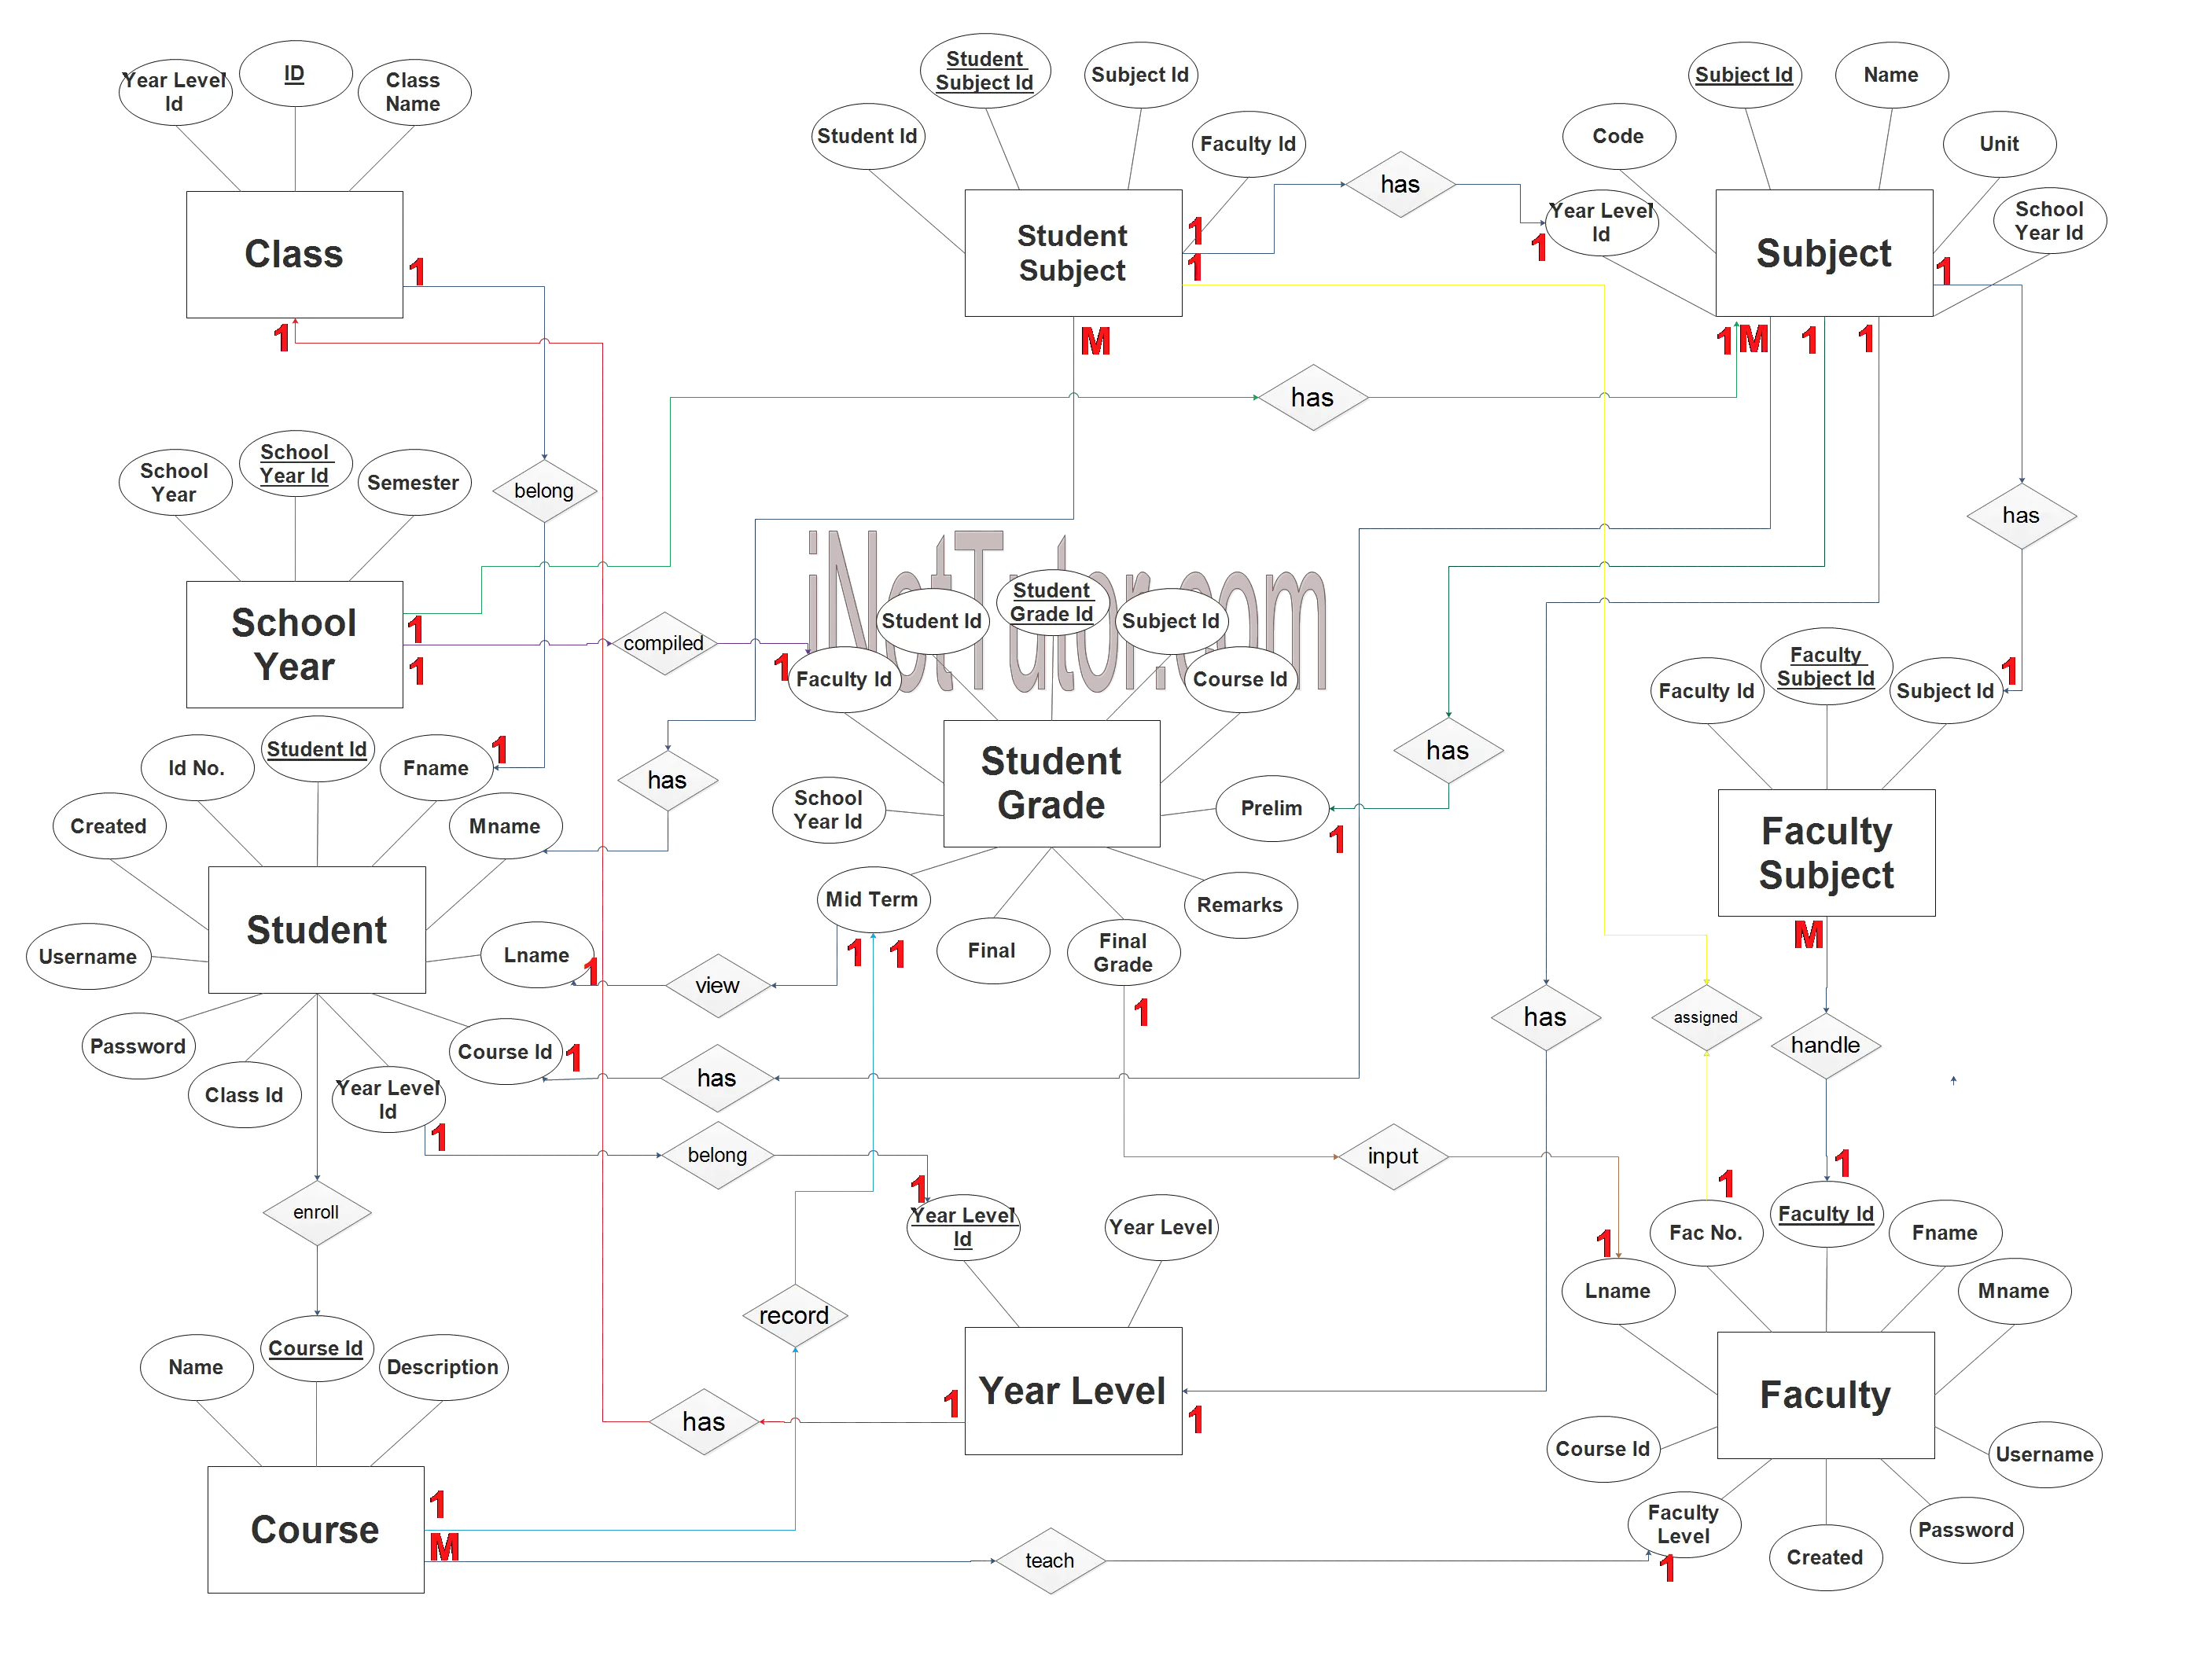 Web Based Grading System ER Diagram - Step 3 Complete ERD